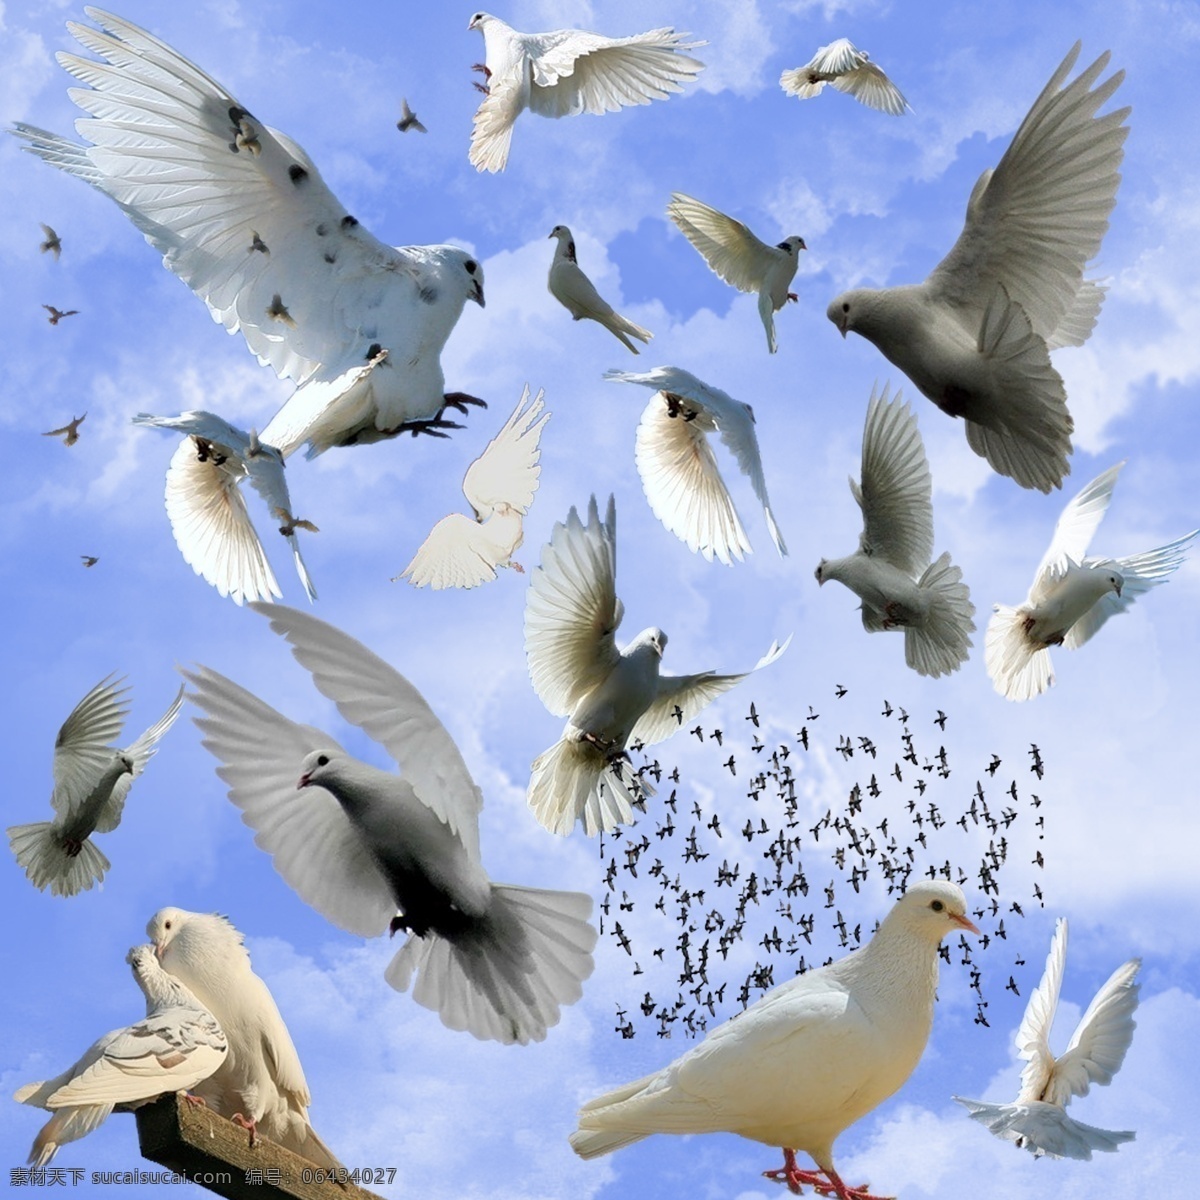 鸽子素材 鸽子 飞翔的鸽子 多个鸽子鸟 一群大雁 动物素材 设计素材 平面设计 psd分层 生物世界 鸟类